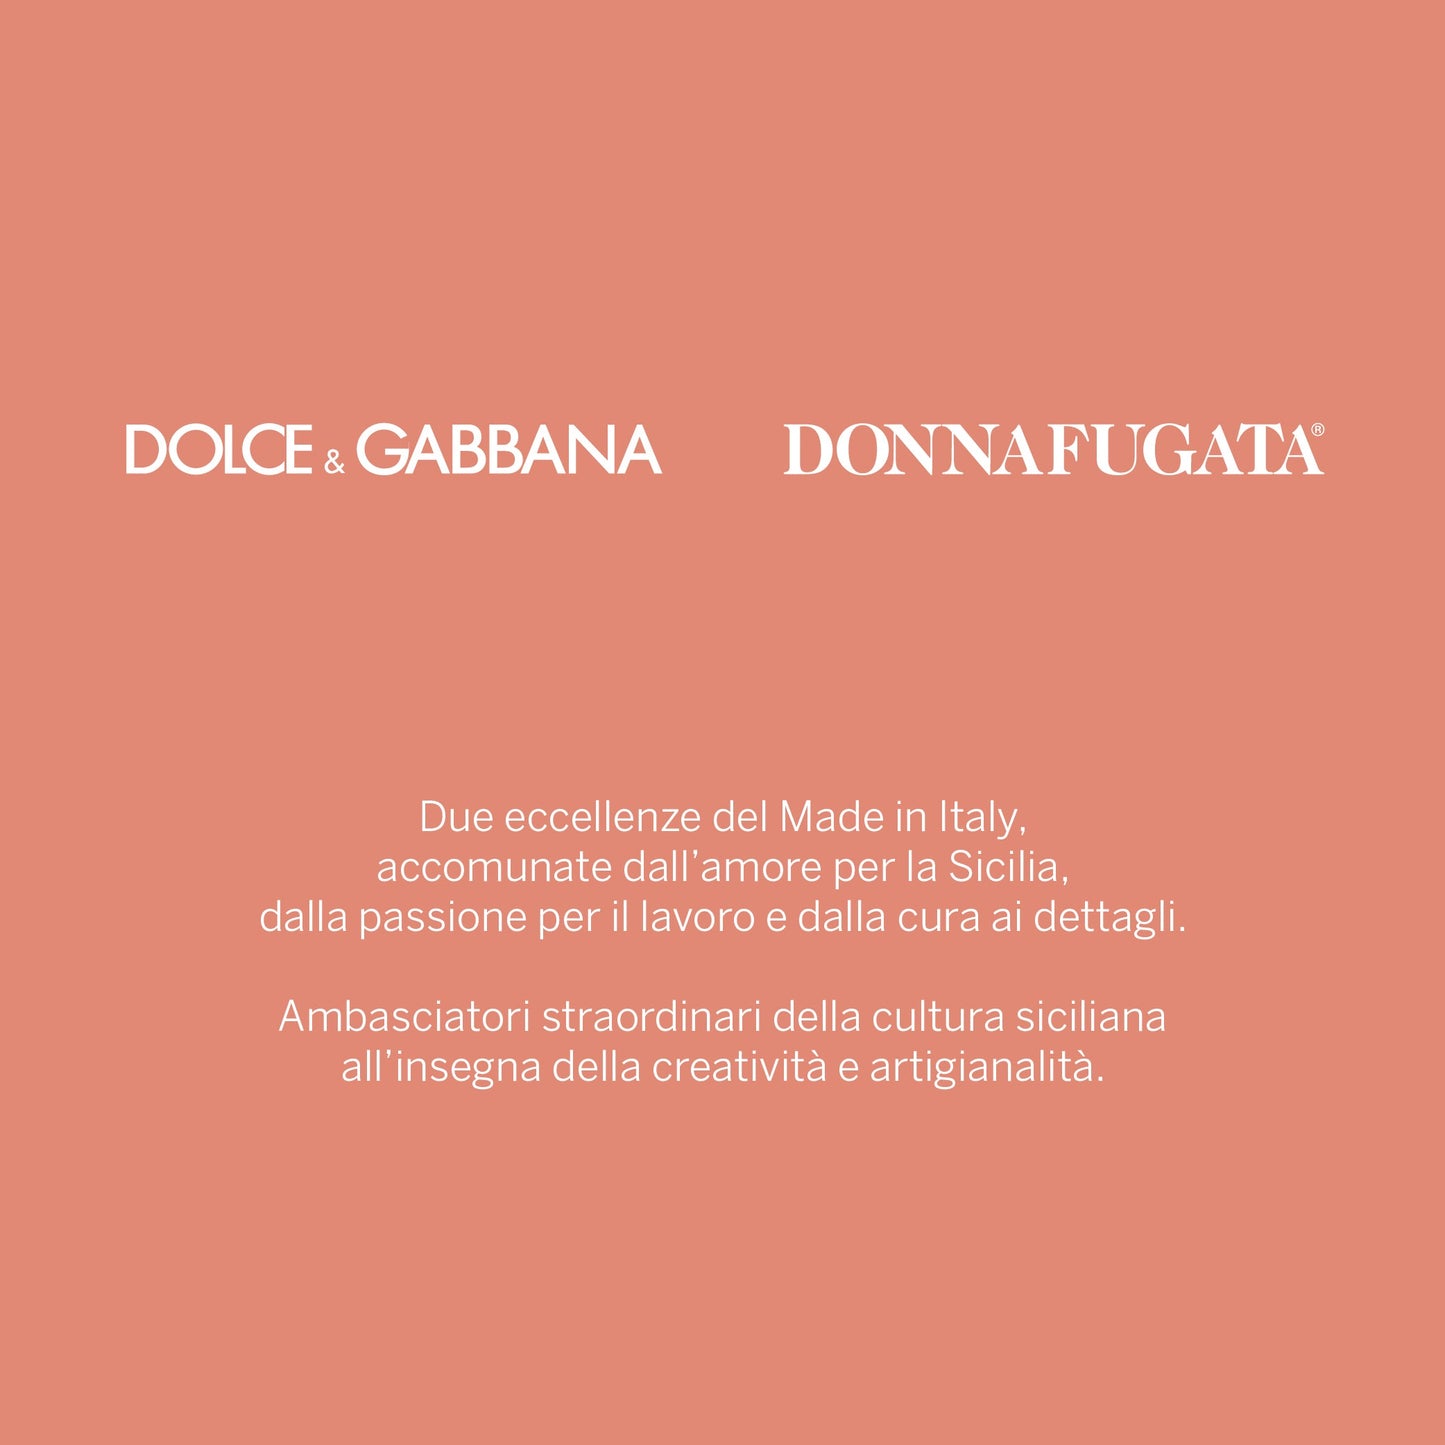 ROSA Dolce&Gabbana e Donnafugata 2020 Sicilia Doc Rosato - in astuccio, 0,75 L Vini e liquori Donnafugata 